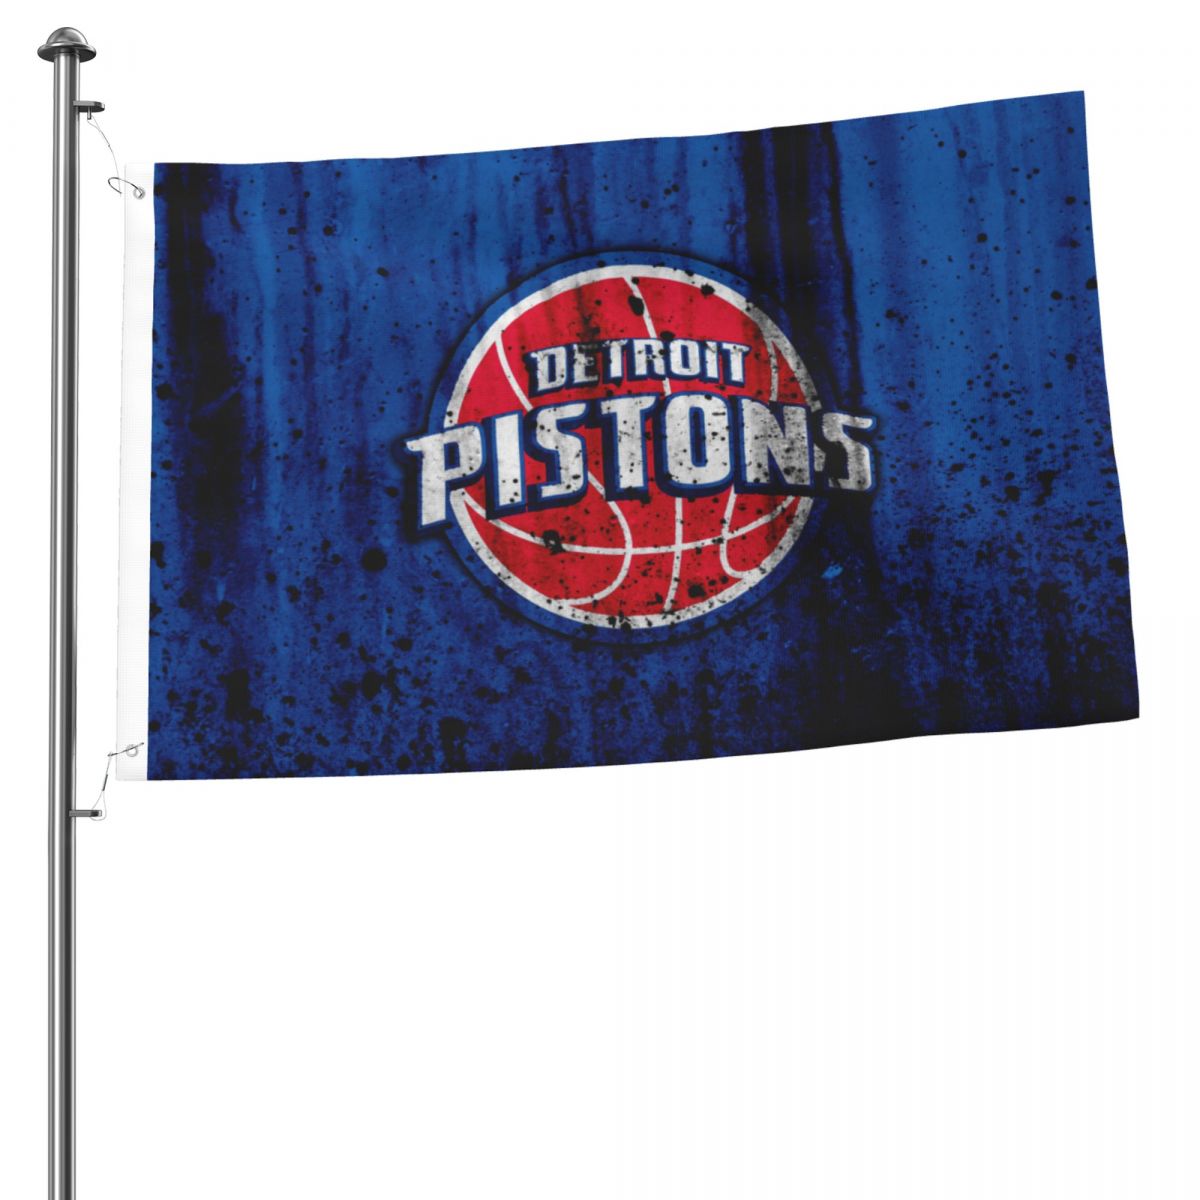 Detroit Pistons Grunge NBA 2x3 FT UV Resistant Flag